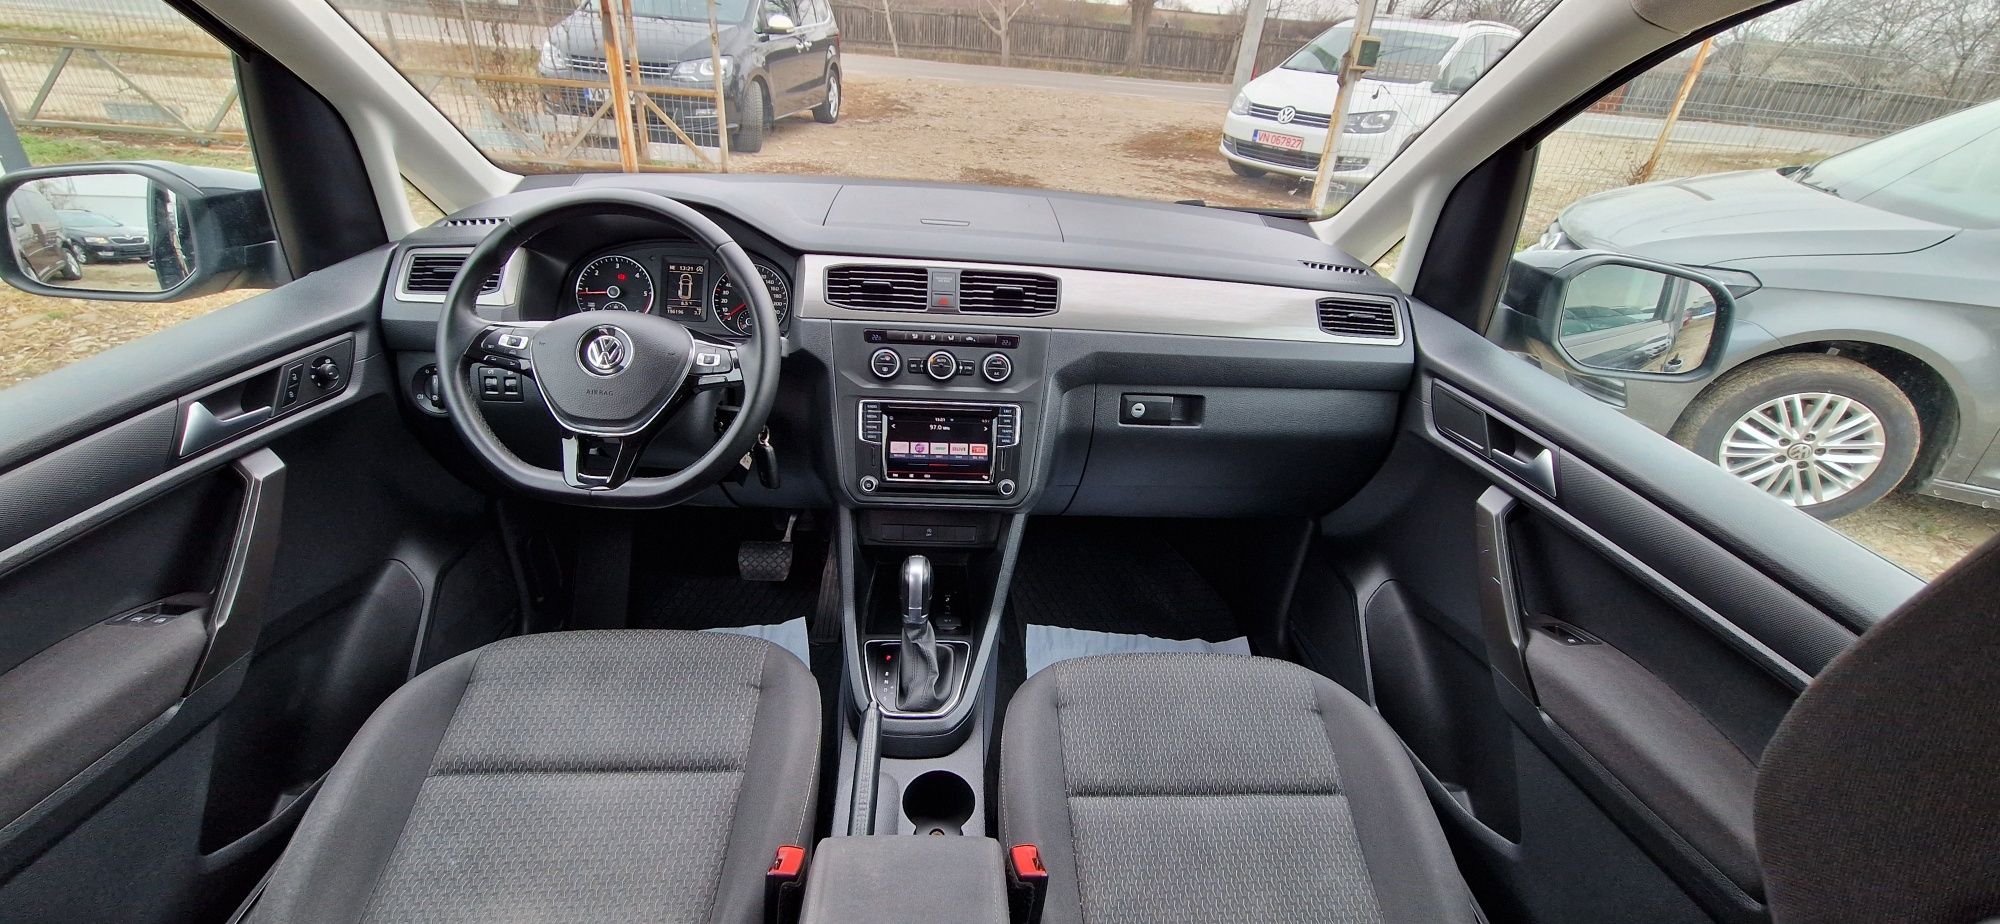 Volkswagen caddy maxi